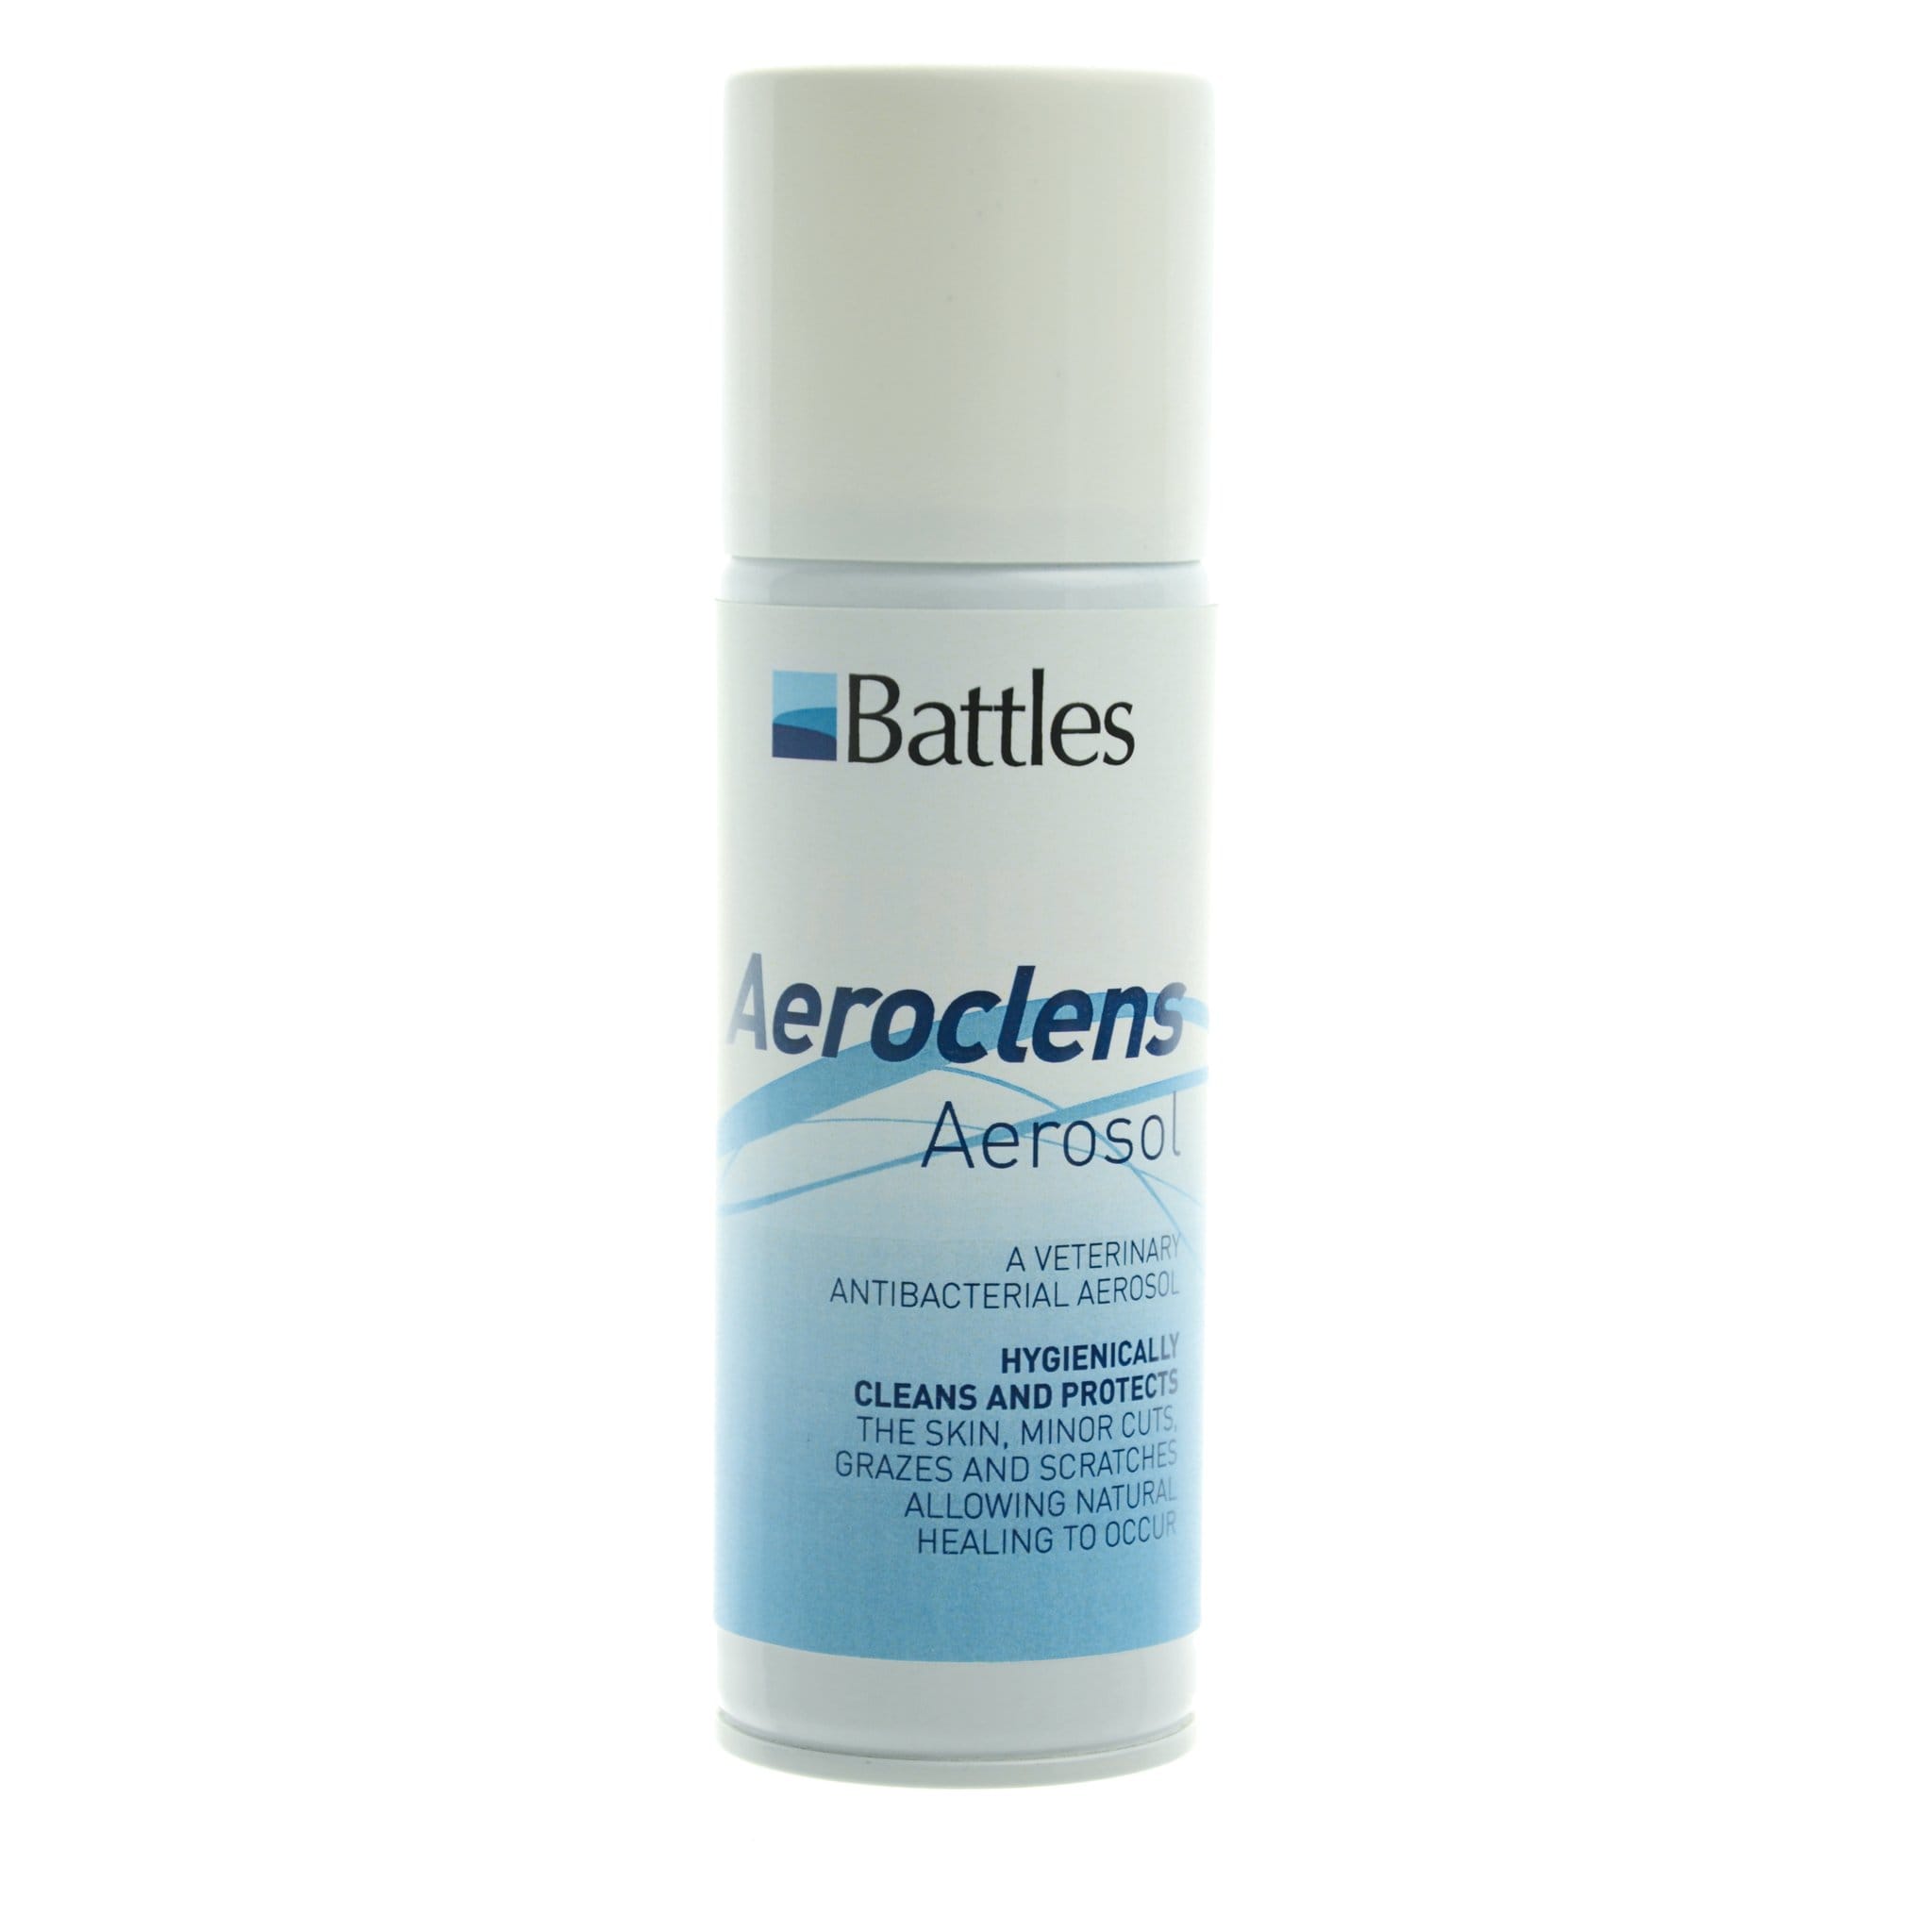 Battles Aeroclens Aerosol 2505